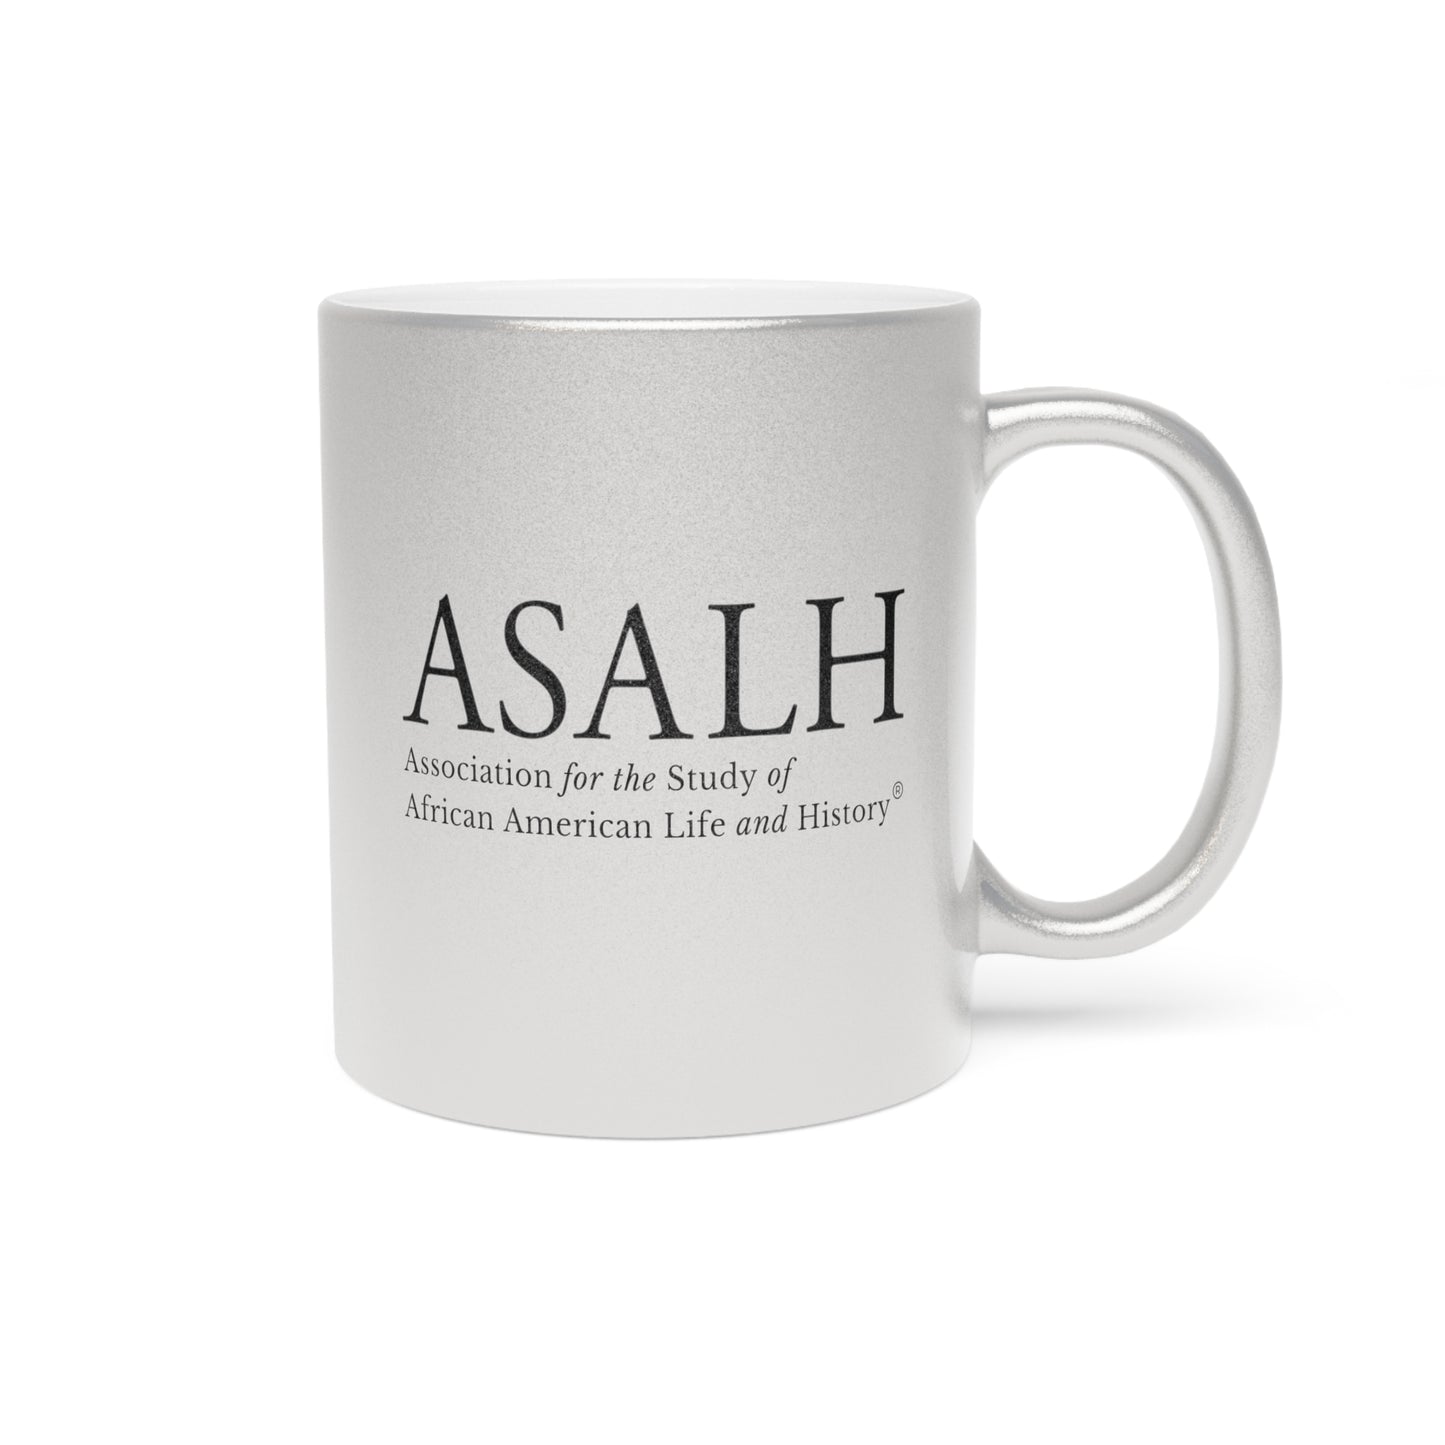 ASALH Metallic Mug